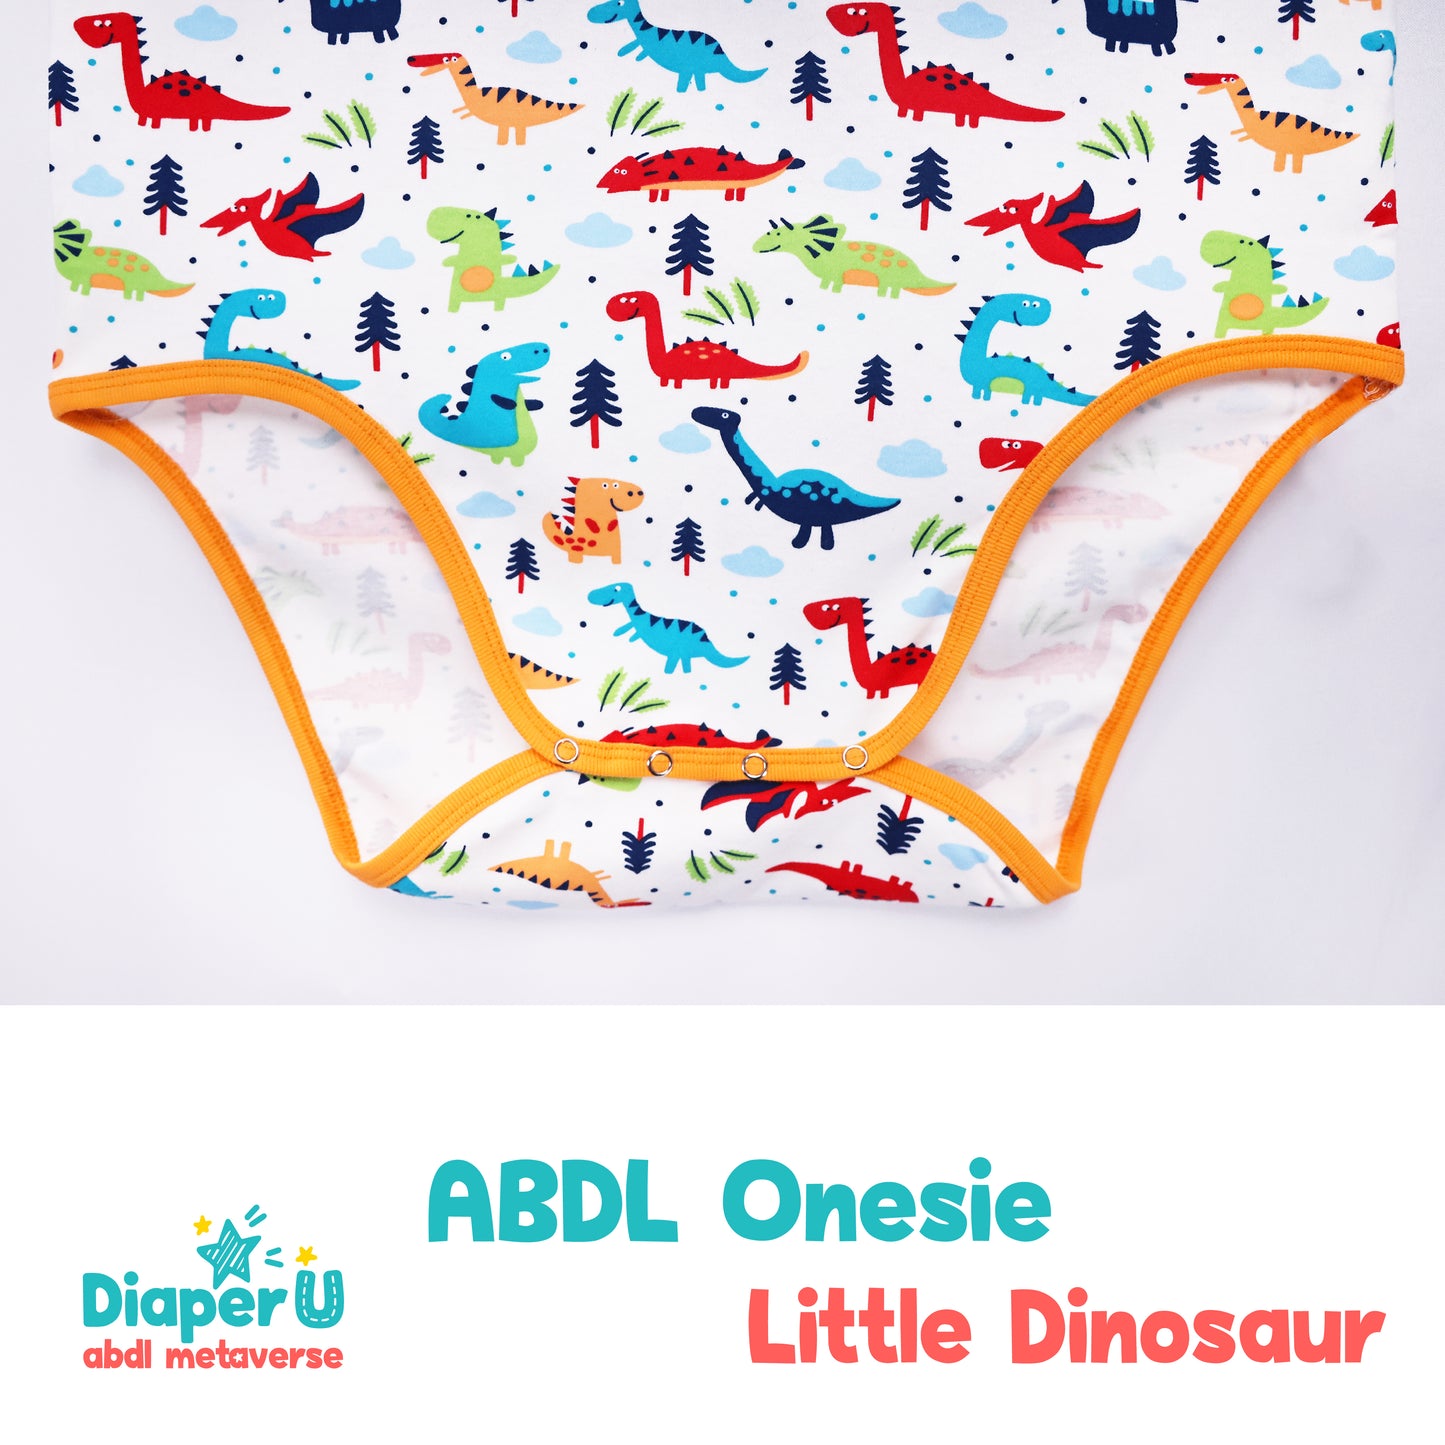 ABDL Onesie - Little Dinosaur